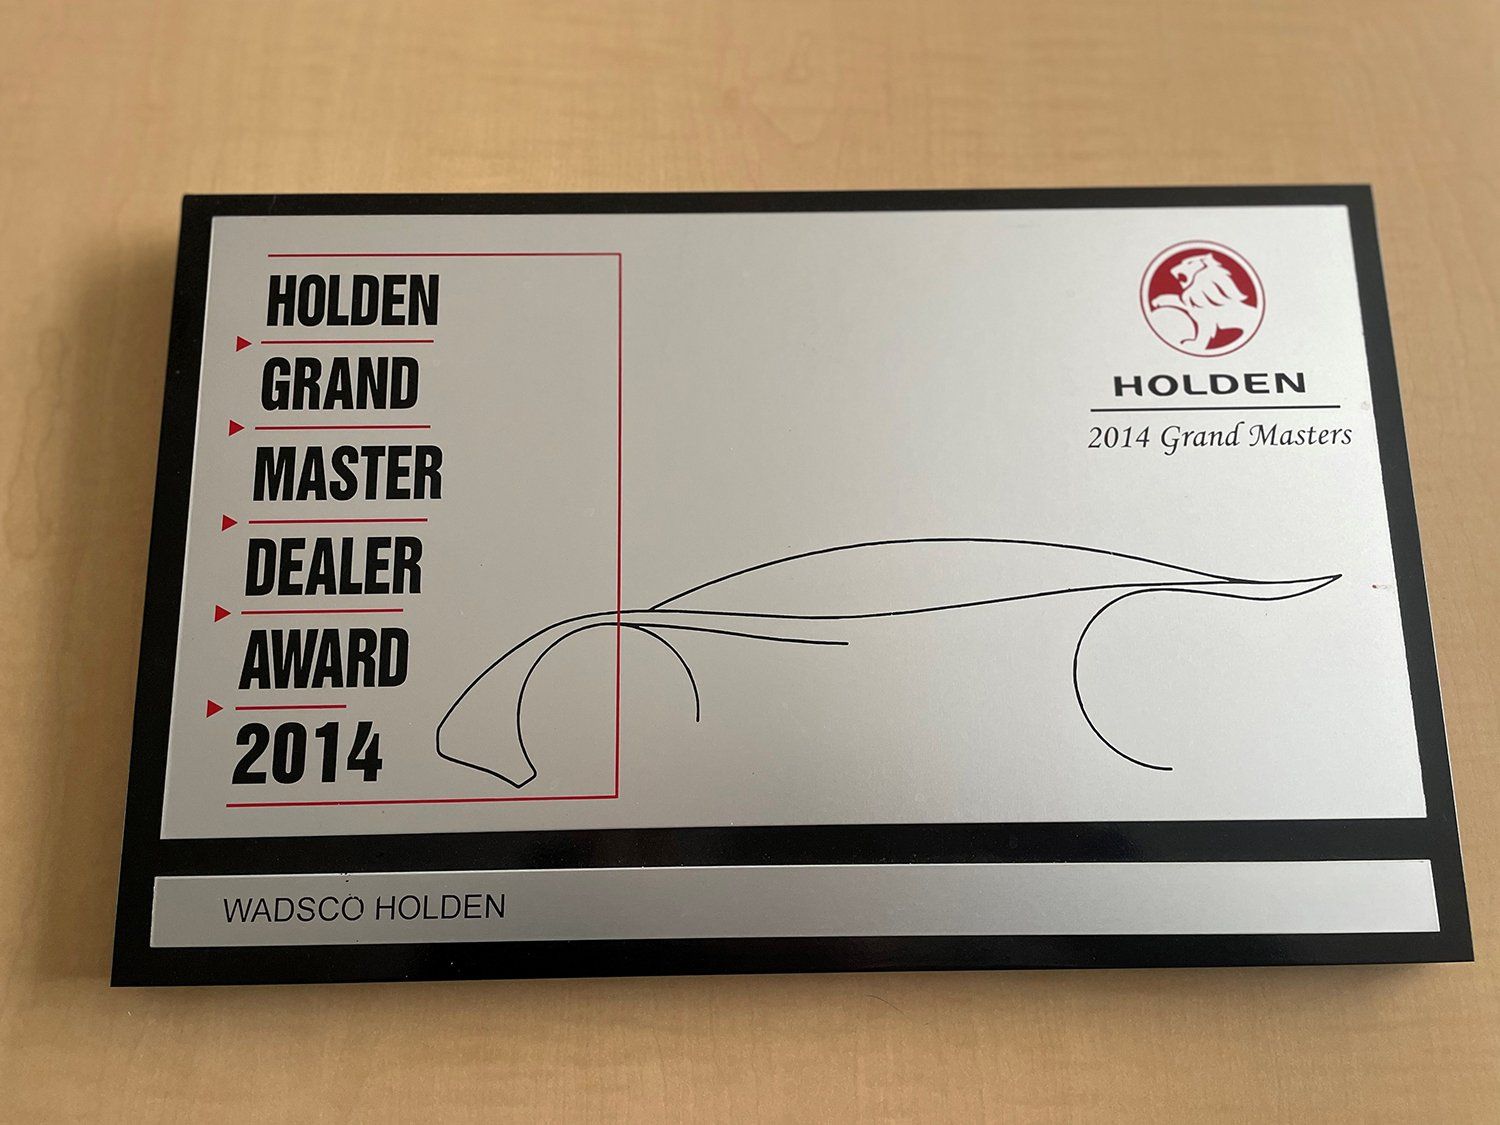 Wadsco Holden wins the 2014 Holden Grand Master Dealer Award